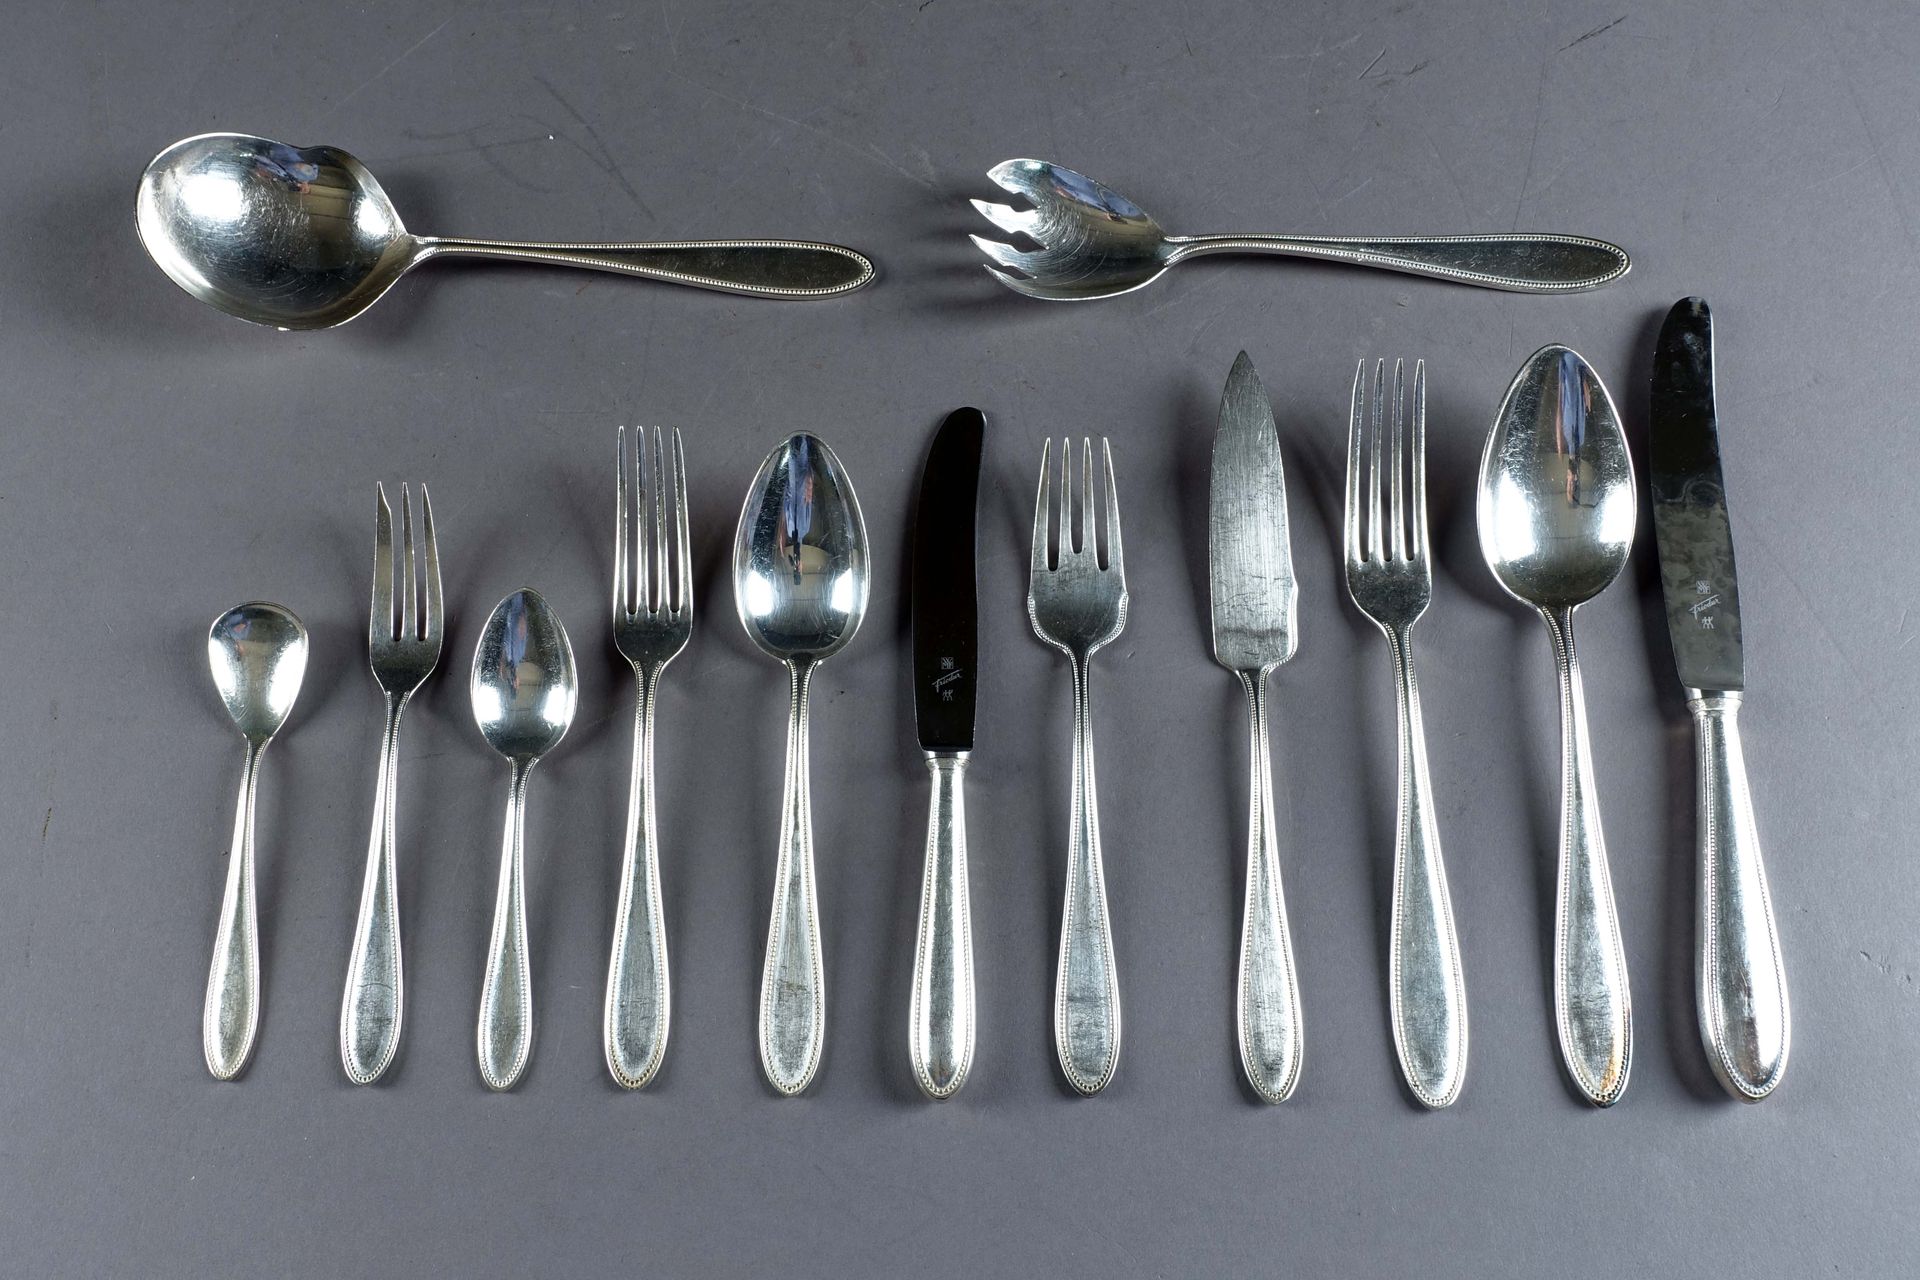 W.M.F. Perles" set of cutlery. It presents twelve dinner forks, twelve soup spoo&hellip;